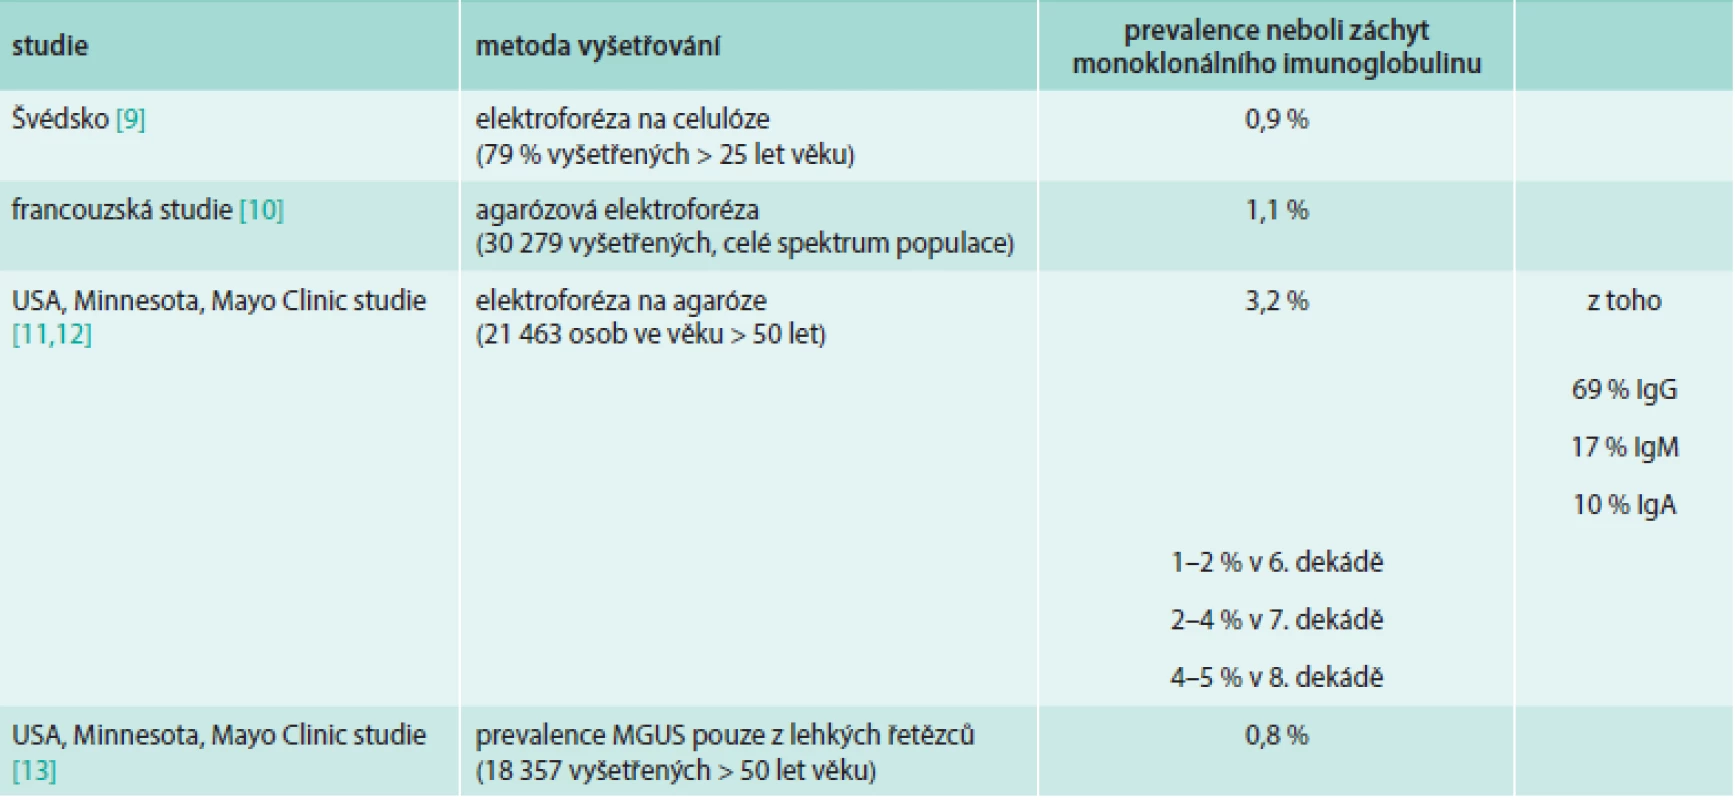 Údaje o výskytu (prevalenci) monoklonálního imunoglobulinu v definované populaci